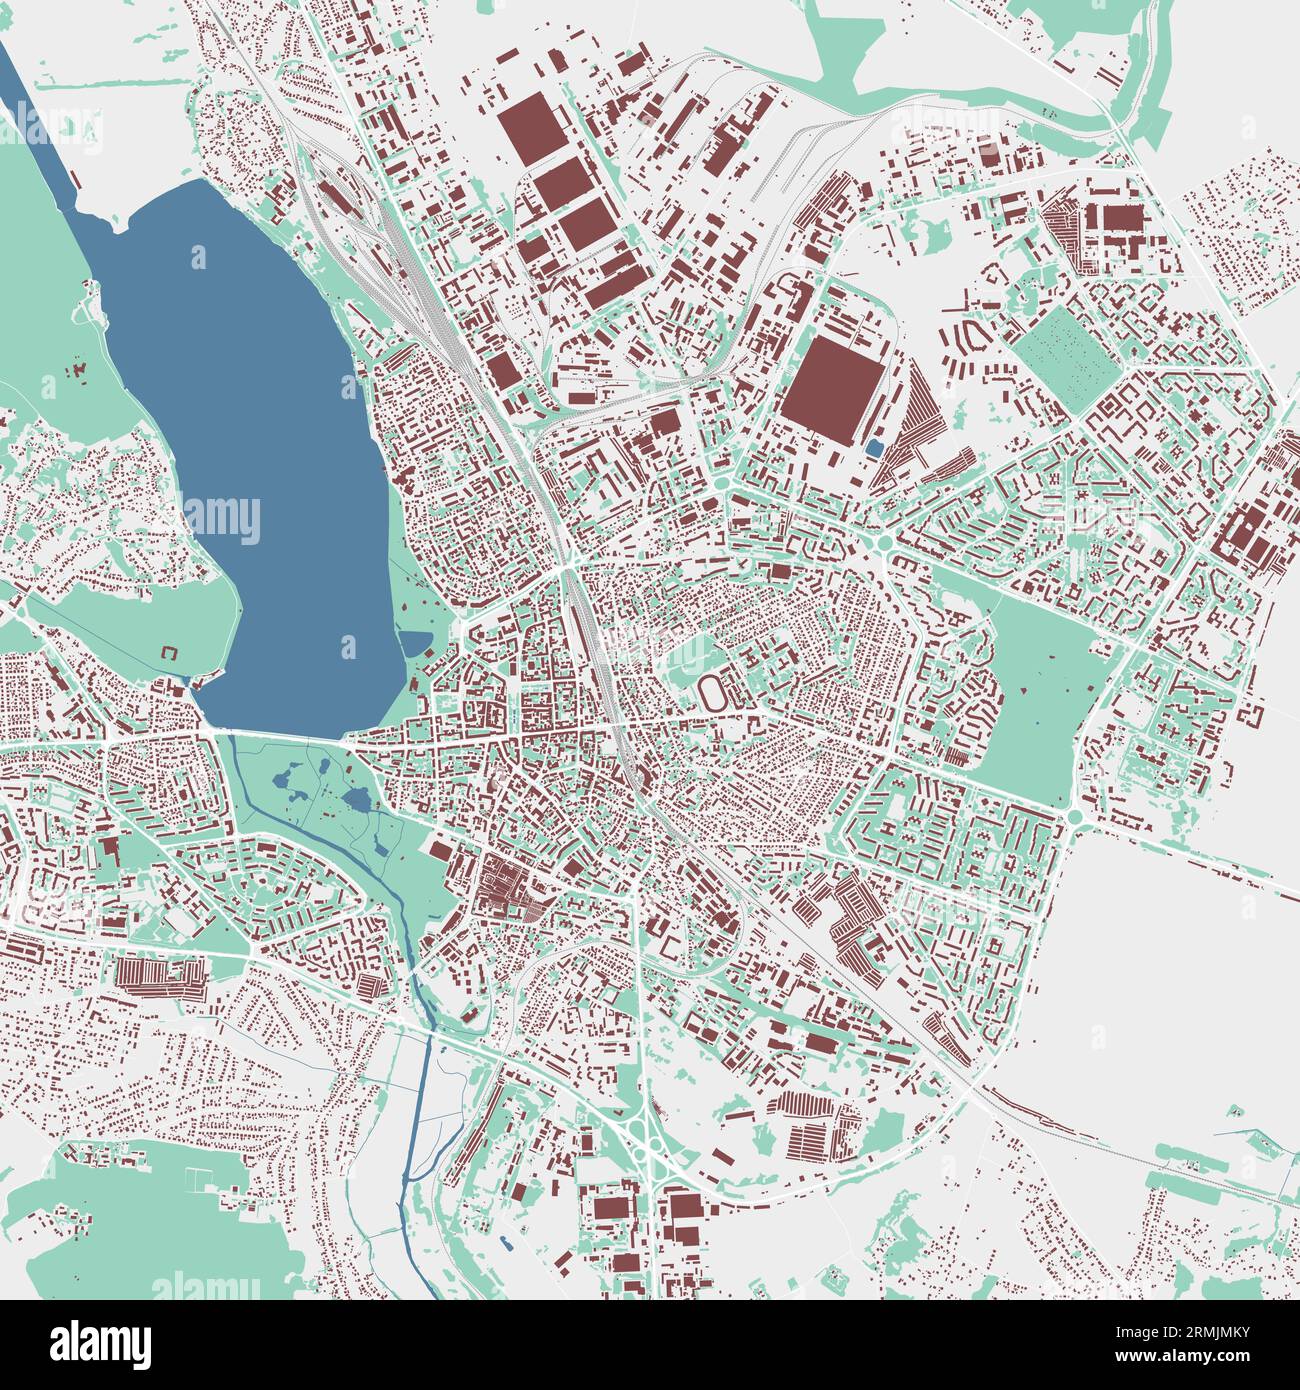 Mappa di Ternopil, oblast centro città dell'Ucraina. Mappa dell'area amministrativa municipale con edifici, fiumi e strade, parchi e ferrovie. Illustrati vettoriali Illustrazione Vettoriale